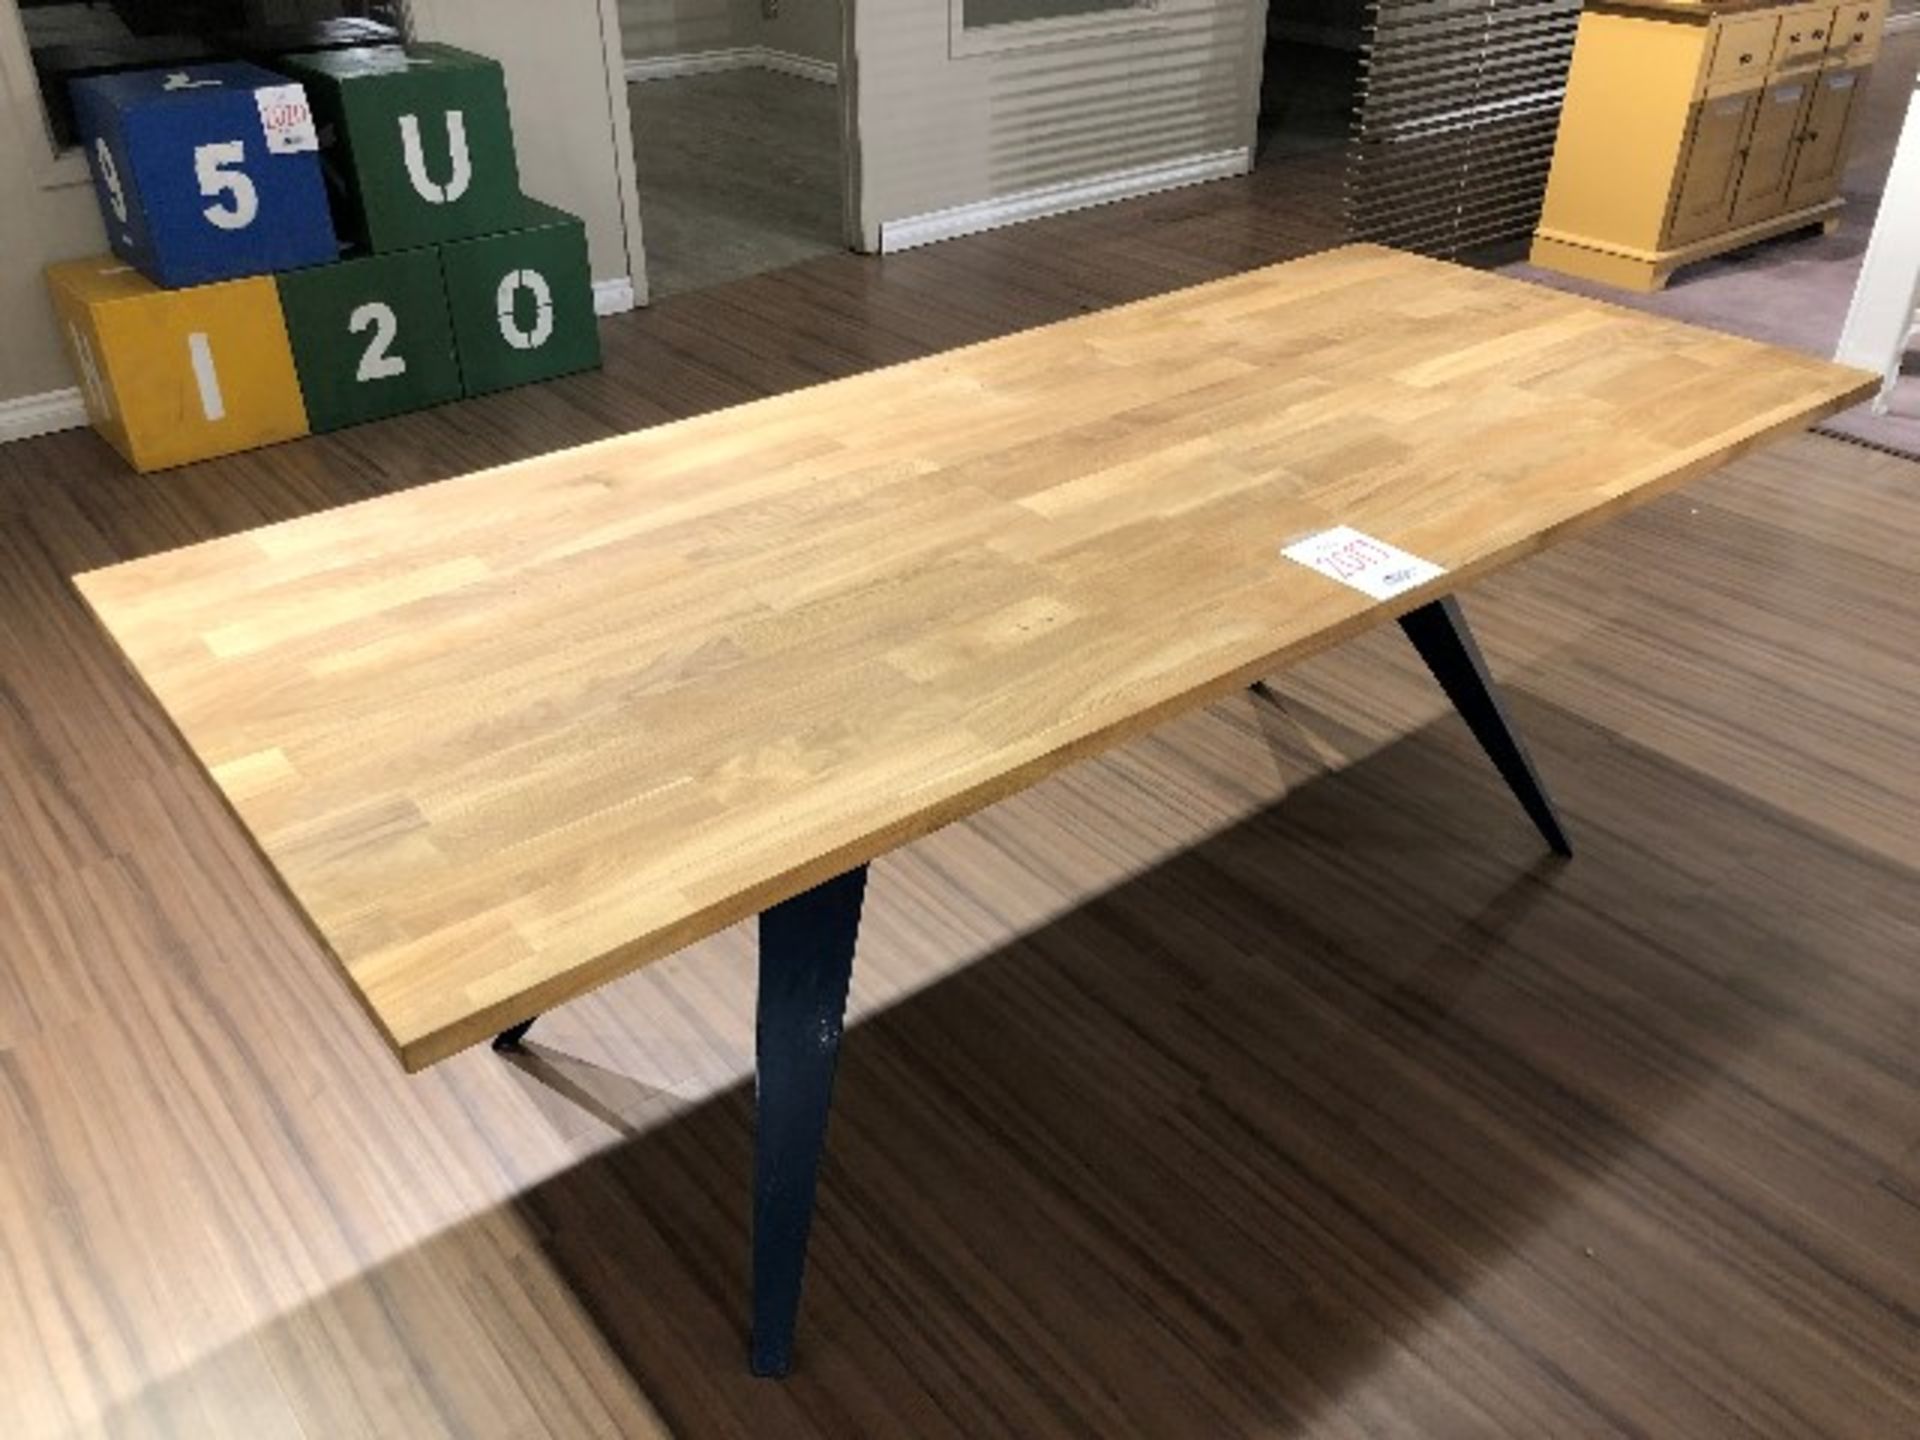 Butcher block style table w/metal base, 82”x35”x29”